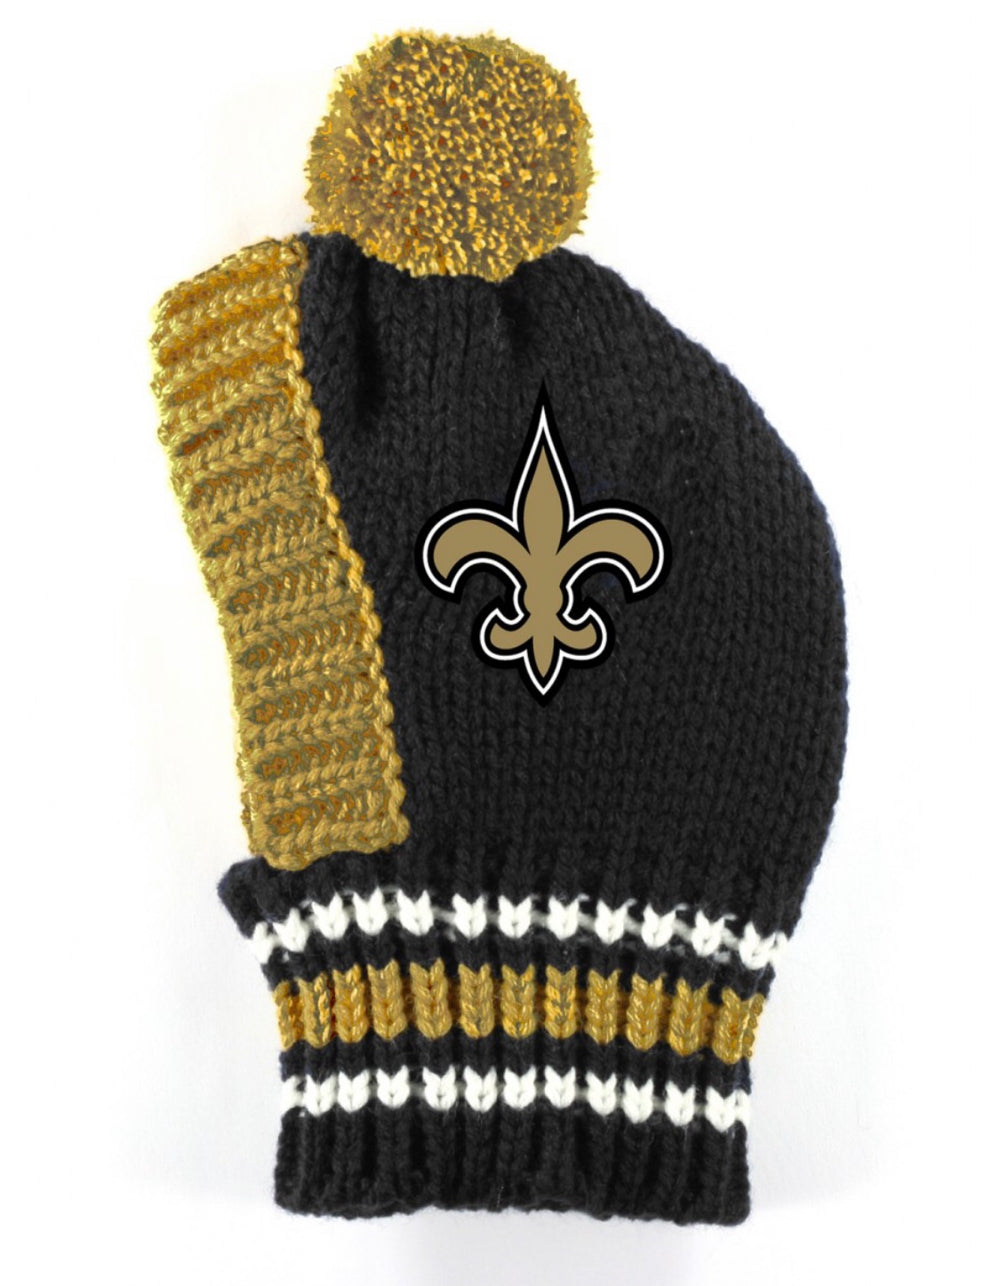 NFL Knit Hat - Saints